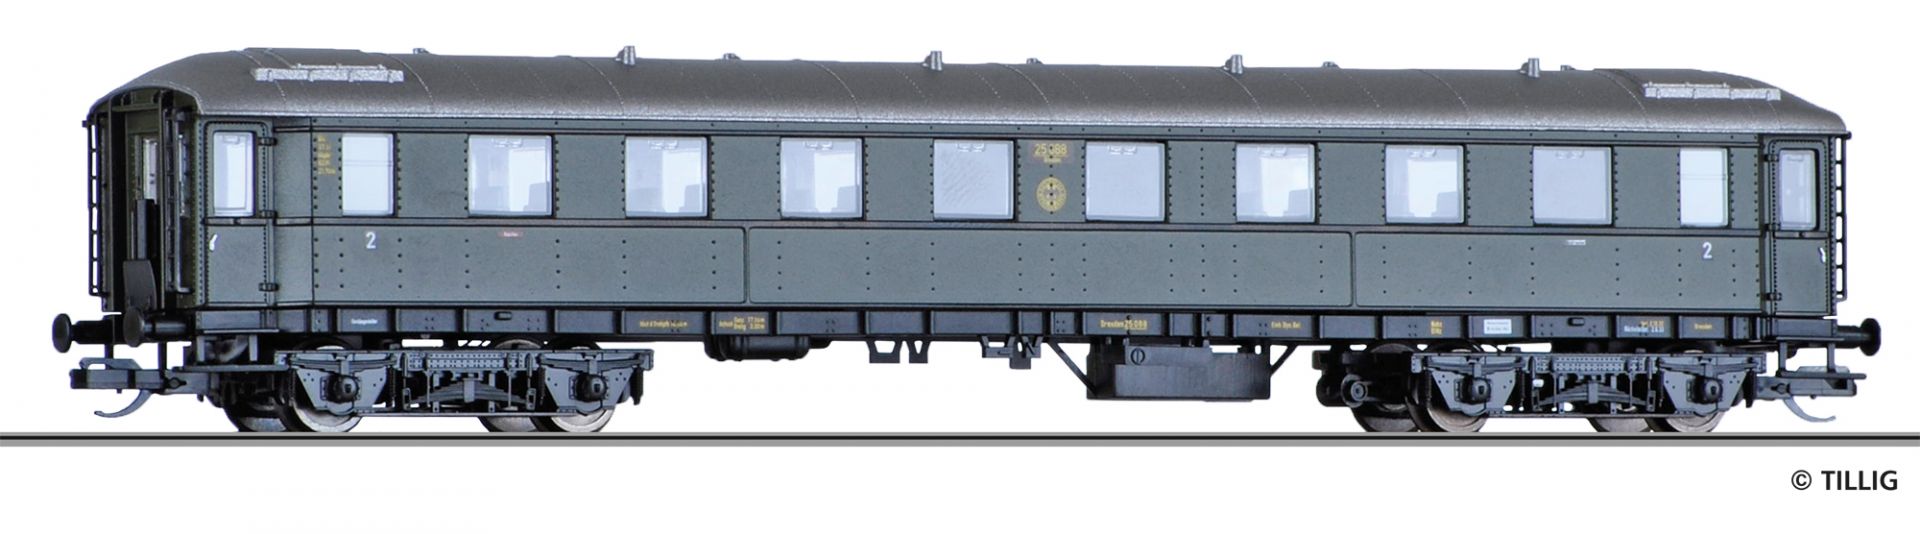 13362 | Reisezugwagen DRG -werksseitig ausverkauft-